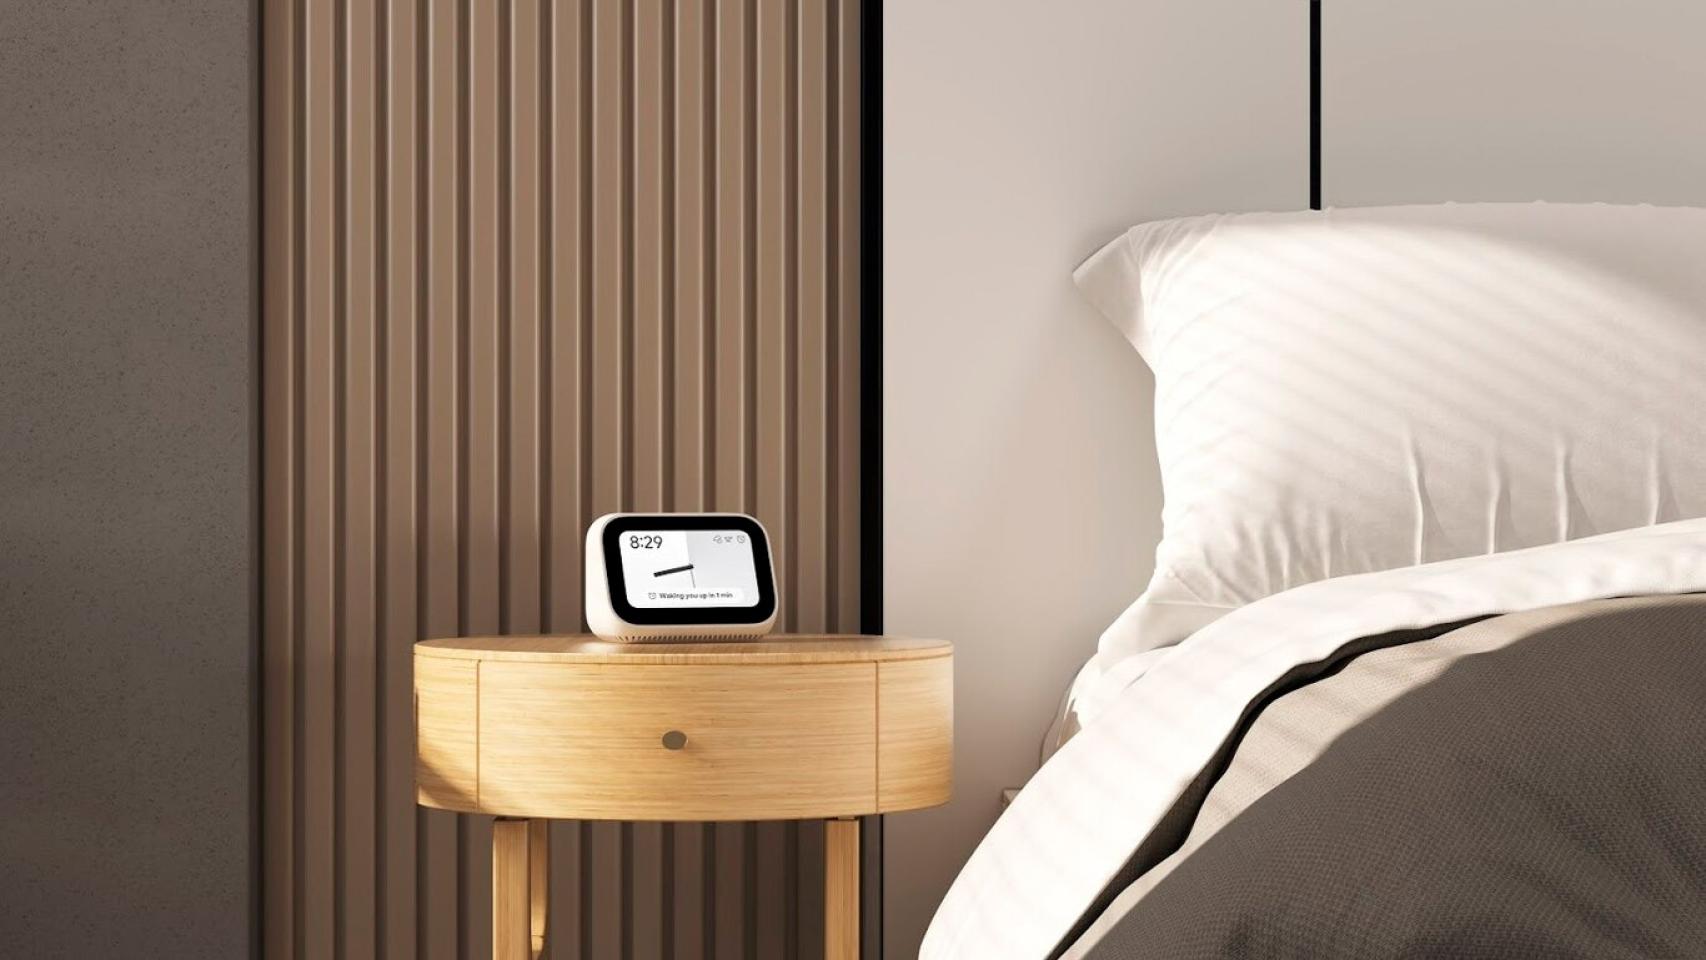 Un despertador inteligente barato y con Google Assistant: no te